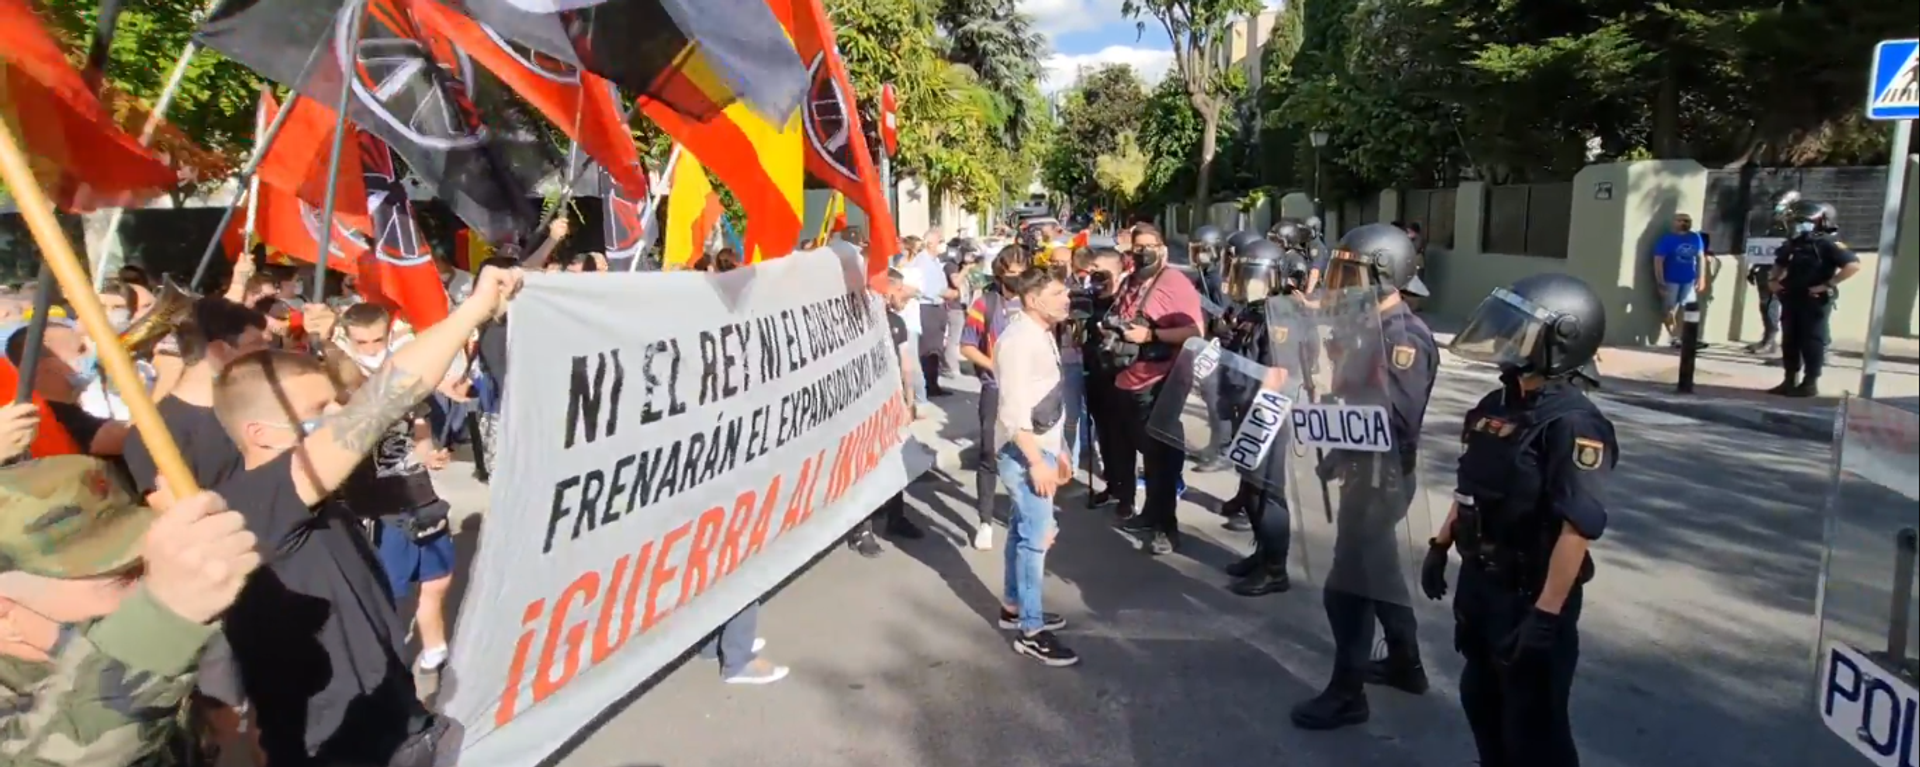 Manifestación en Madrid contra la llegada de inmigrantes a Ceuta - Sputnik Mundo, 1920, 19.05.2021